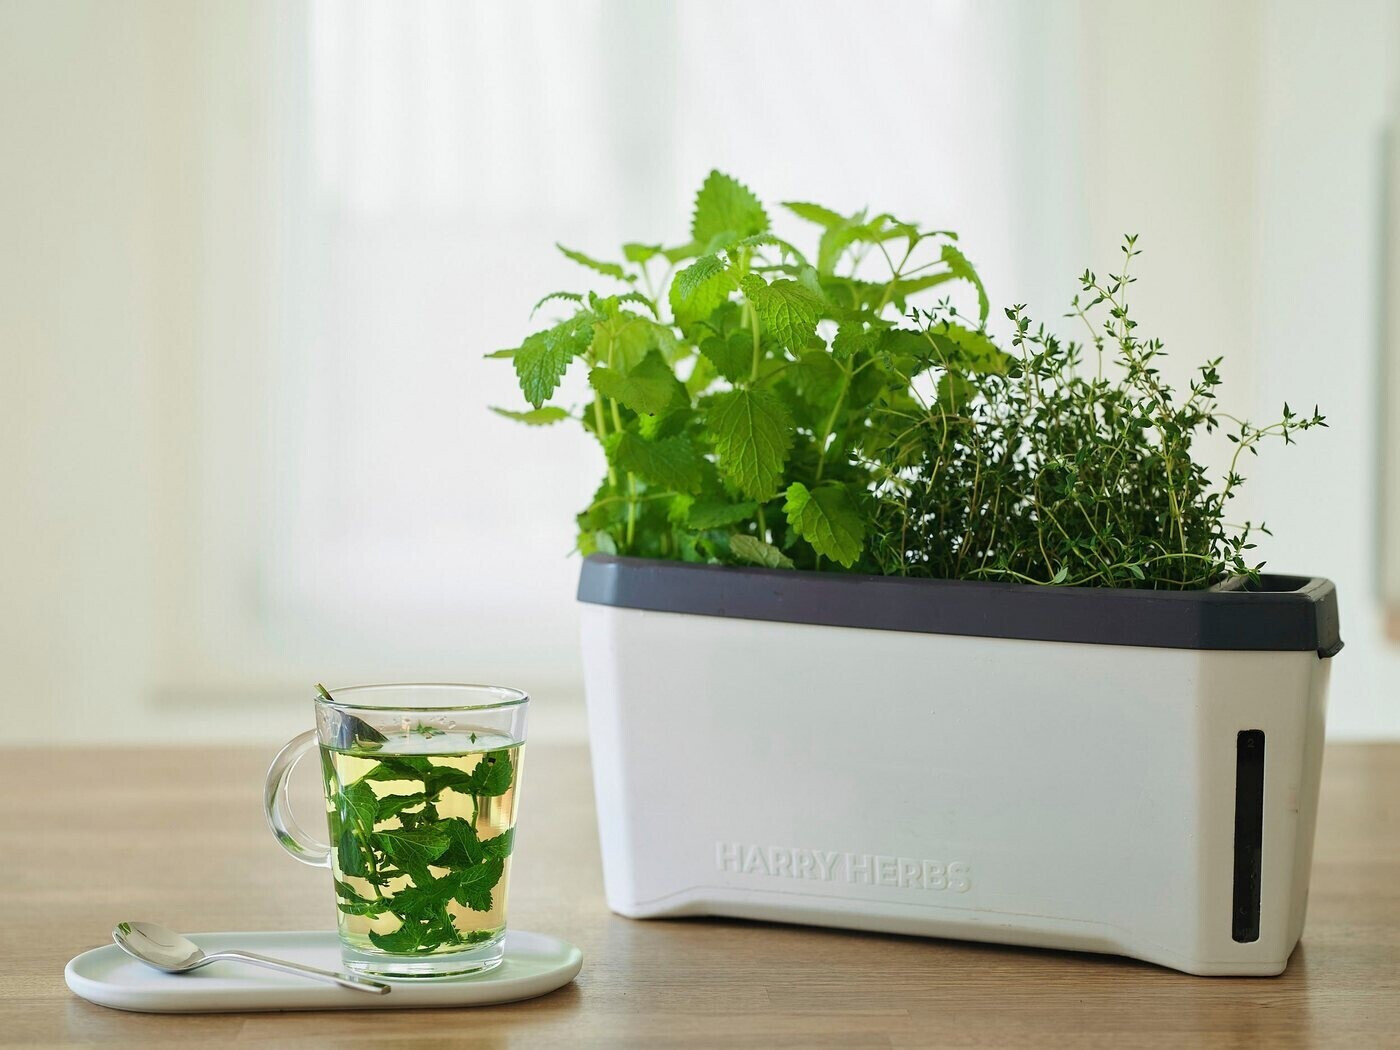 Gusta Garden Harry Herbs 4 in 1 Kräutertopf mit Wasserreservoir weiß ab  25,45 € | Preisvergleich bei